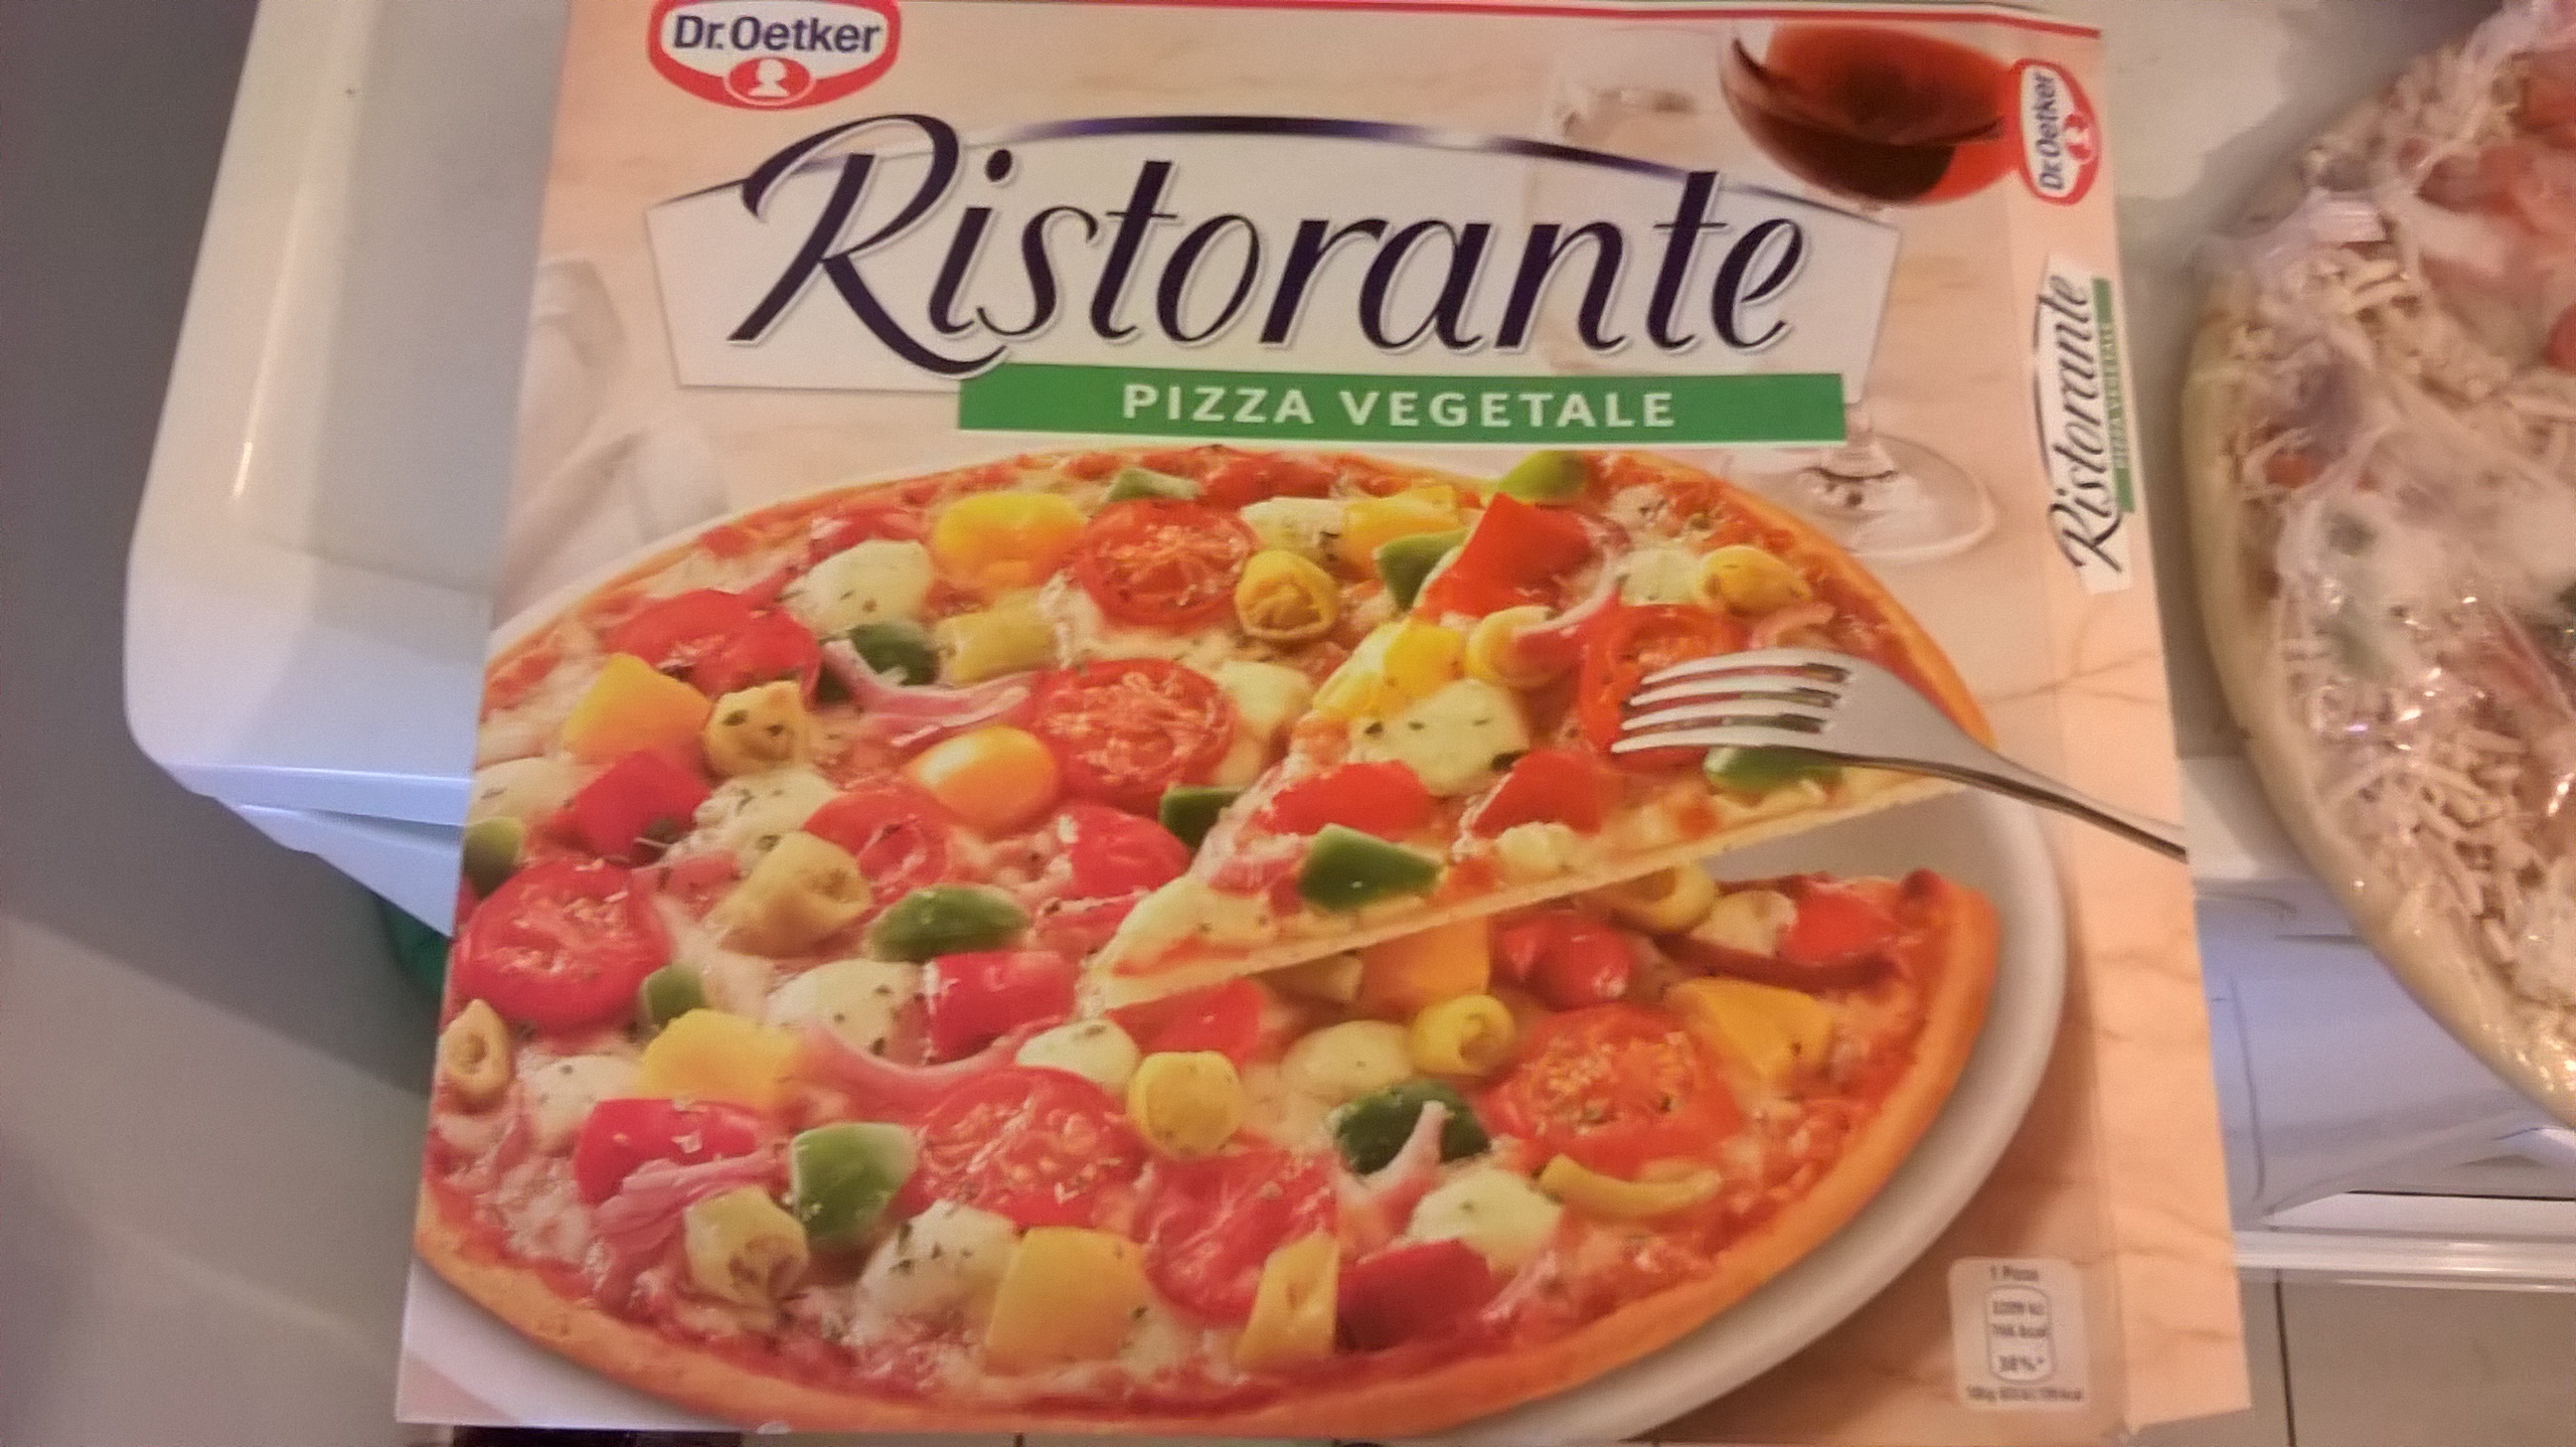 Ristorante: Pizza vegetale - Prodotto